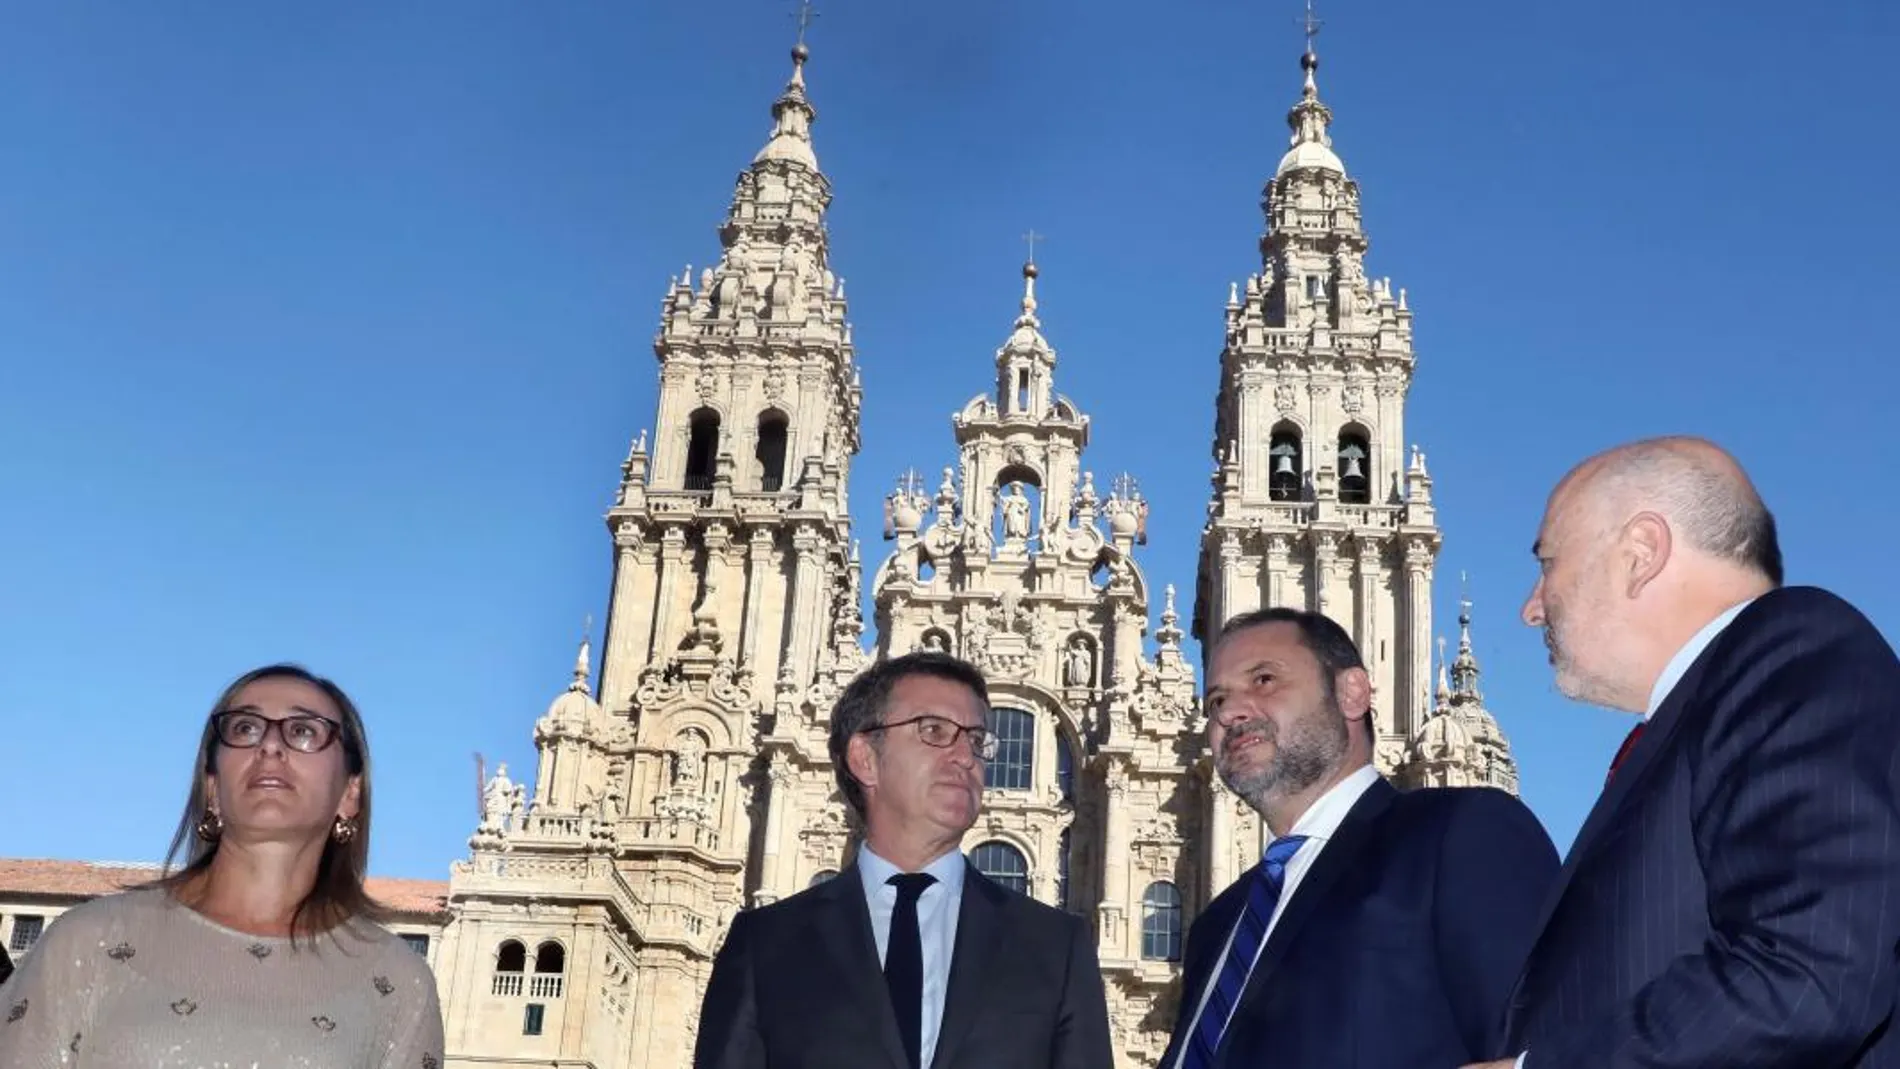 El ministro de Fomento, José Luis Ábalos, se reunió con el presidente de la Xunta de Galicia, Alberto Núñez Feijoo y le aseguró que en 2020 el trayecto Madrid- Galicia se reducirá dos horas